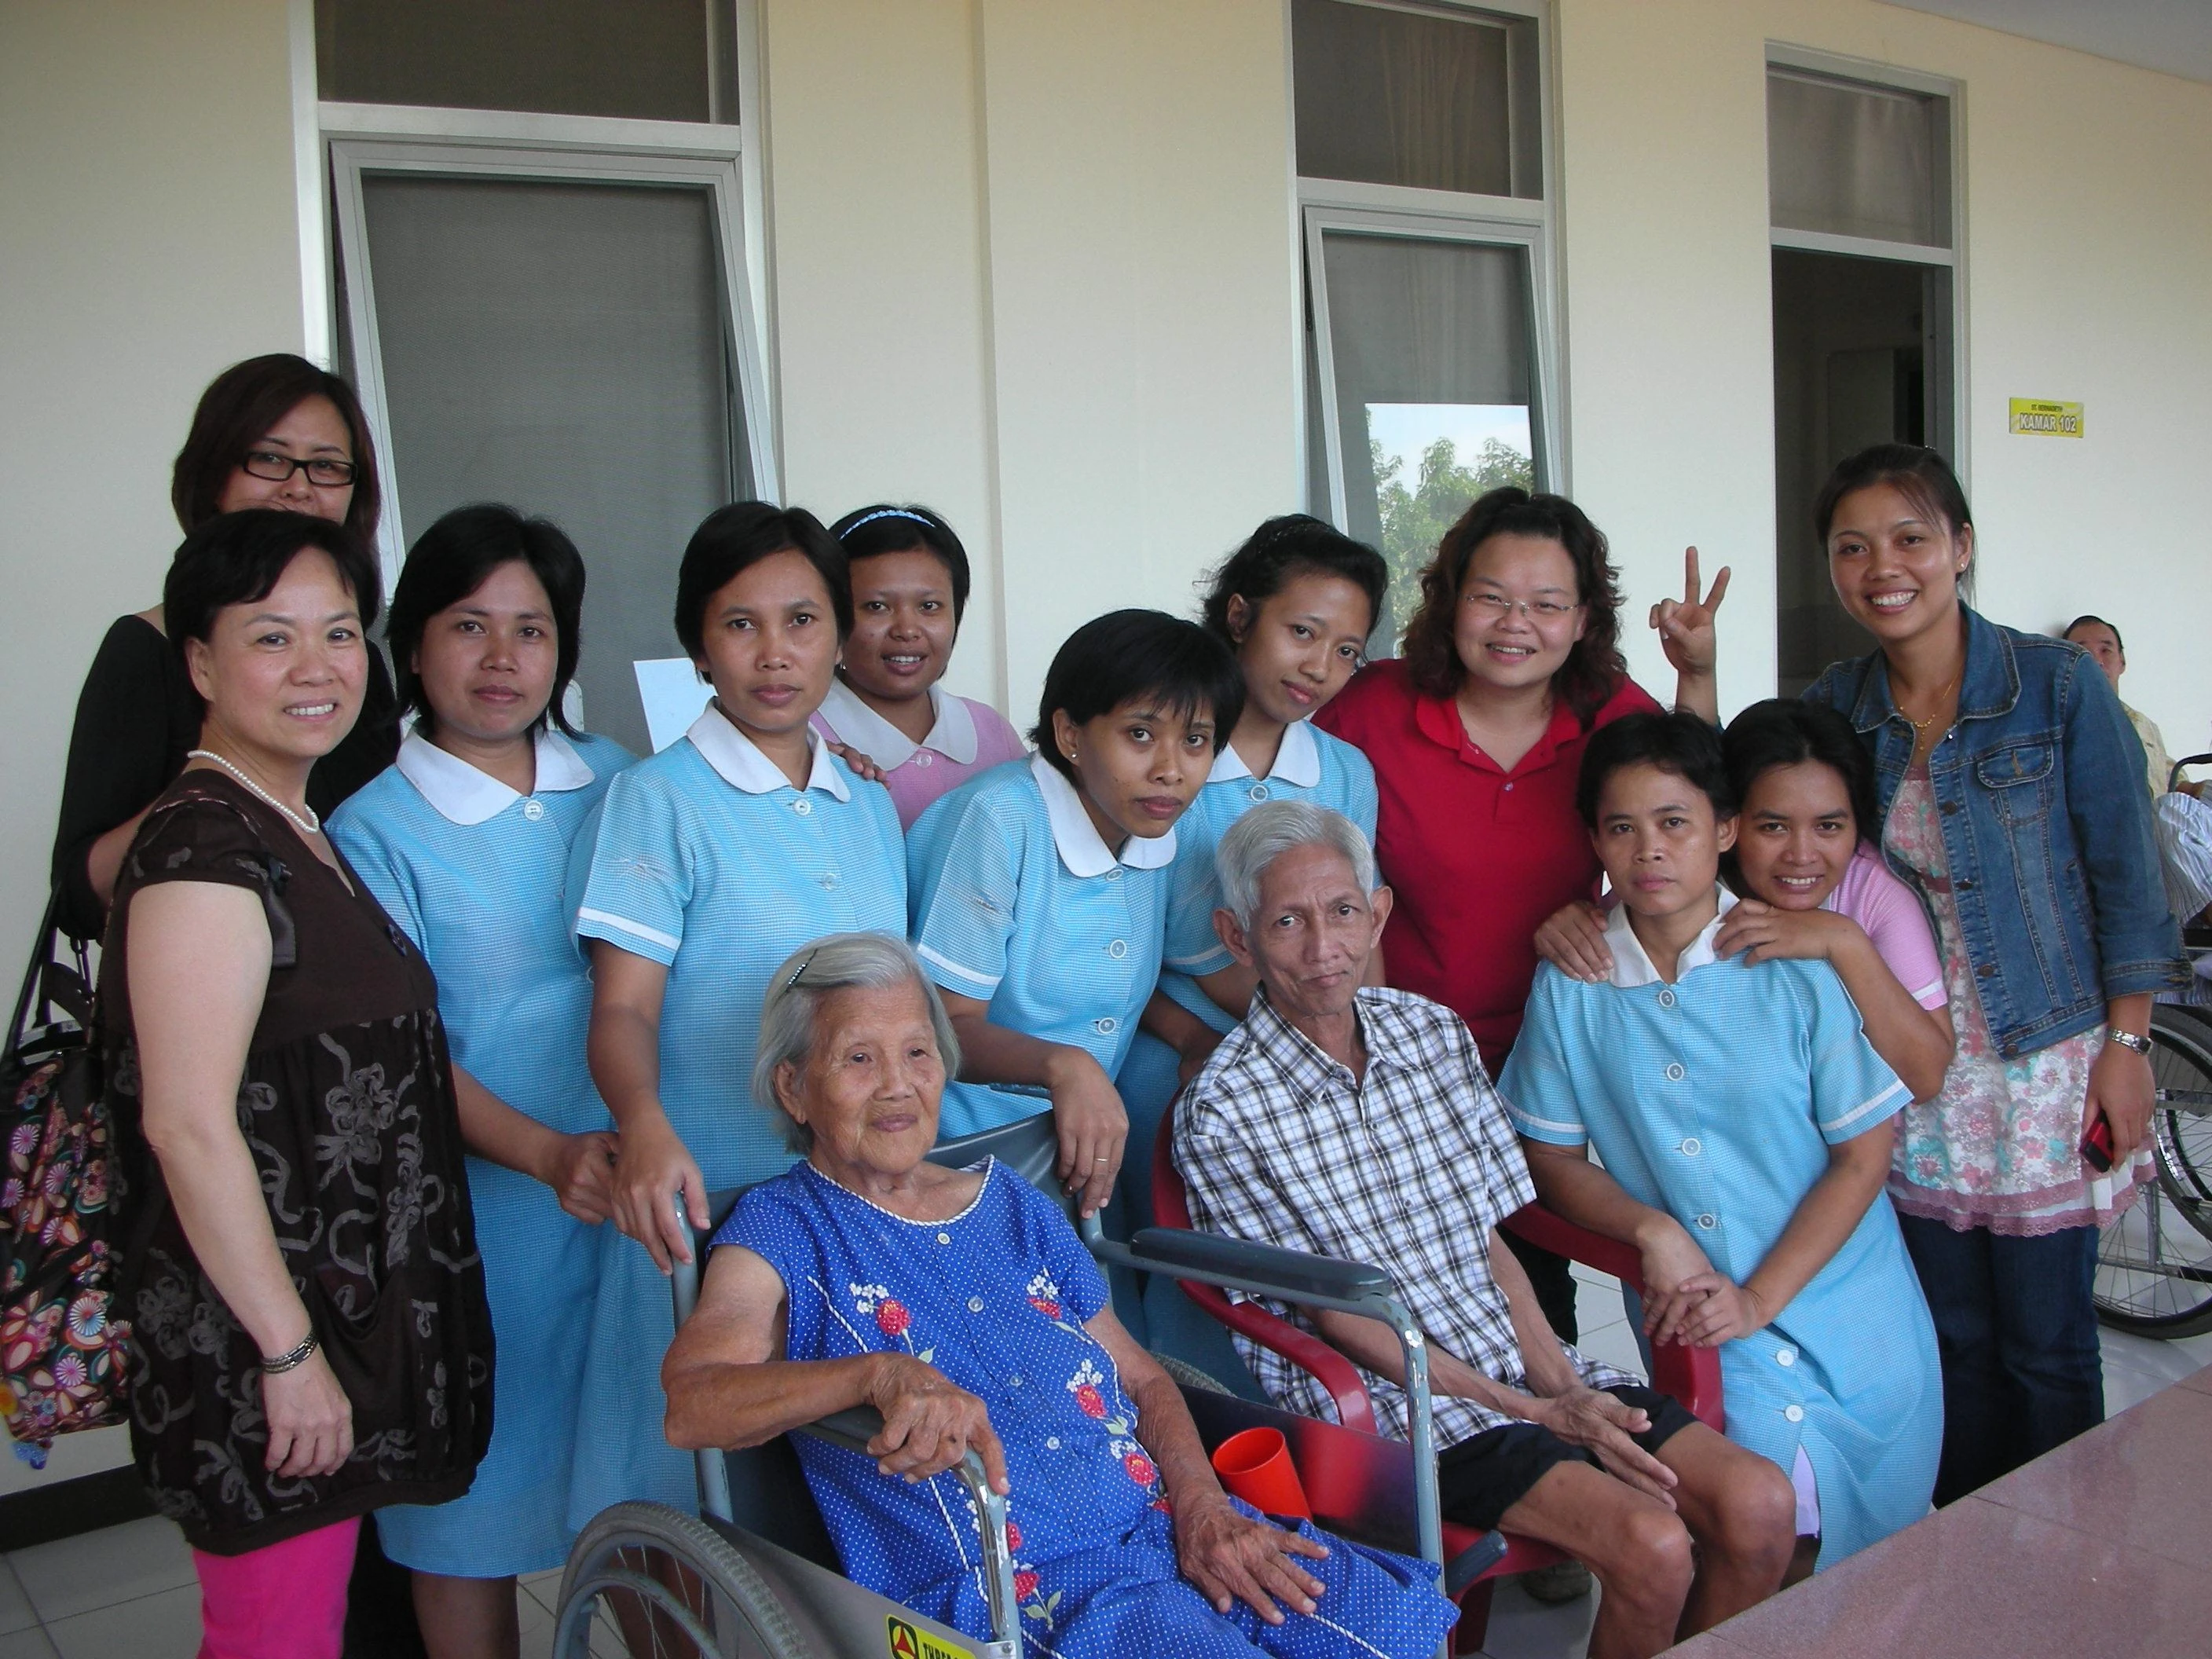 印尼仲介公司在印尼所開設之老人療養院,專為訓練至台灣,香港,新加坡,馬來西亞...等國的女傭,使其女傭無論到哪個國家,都可得心應手的照顧老人家,